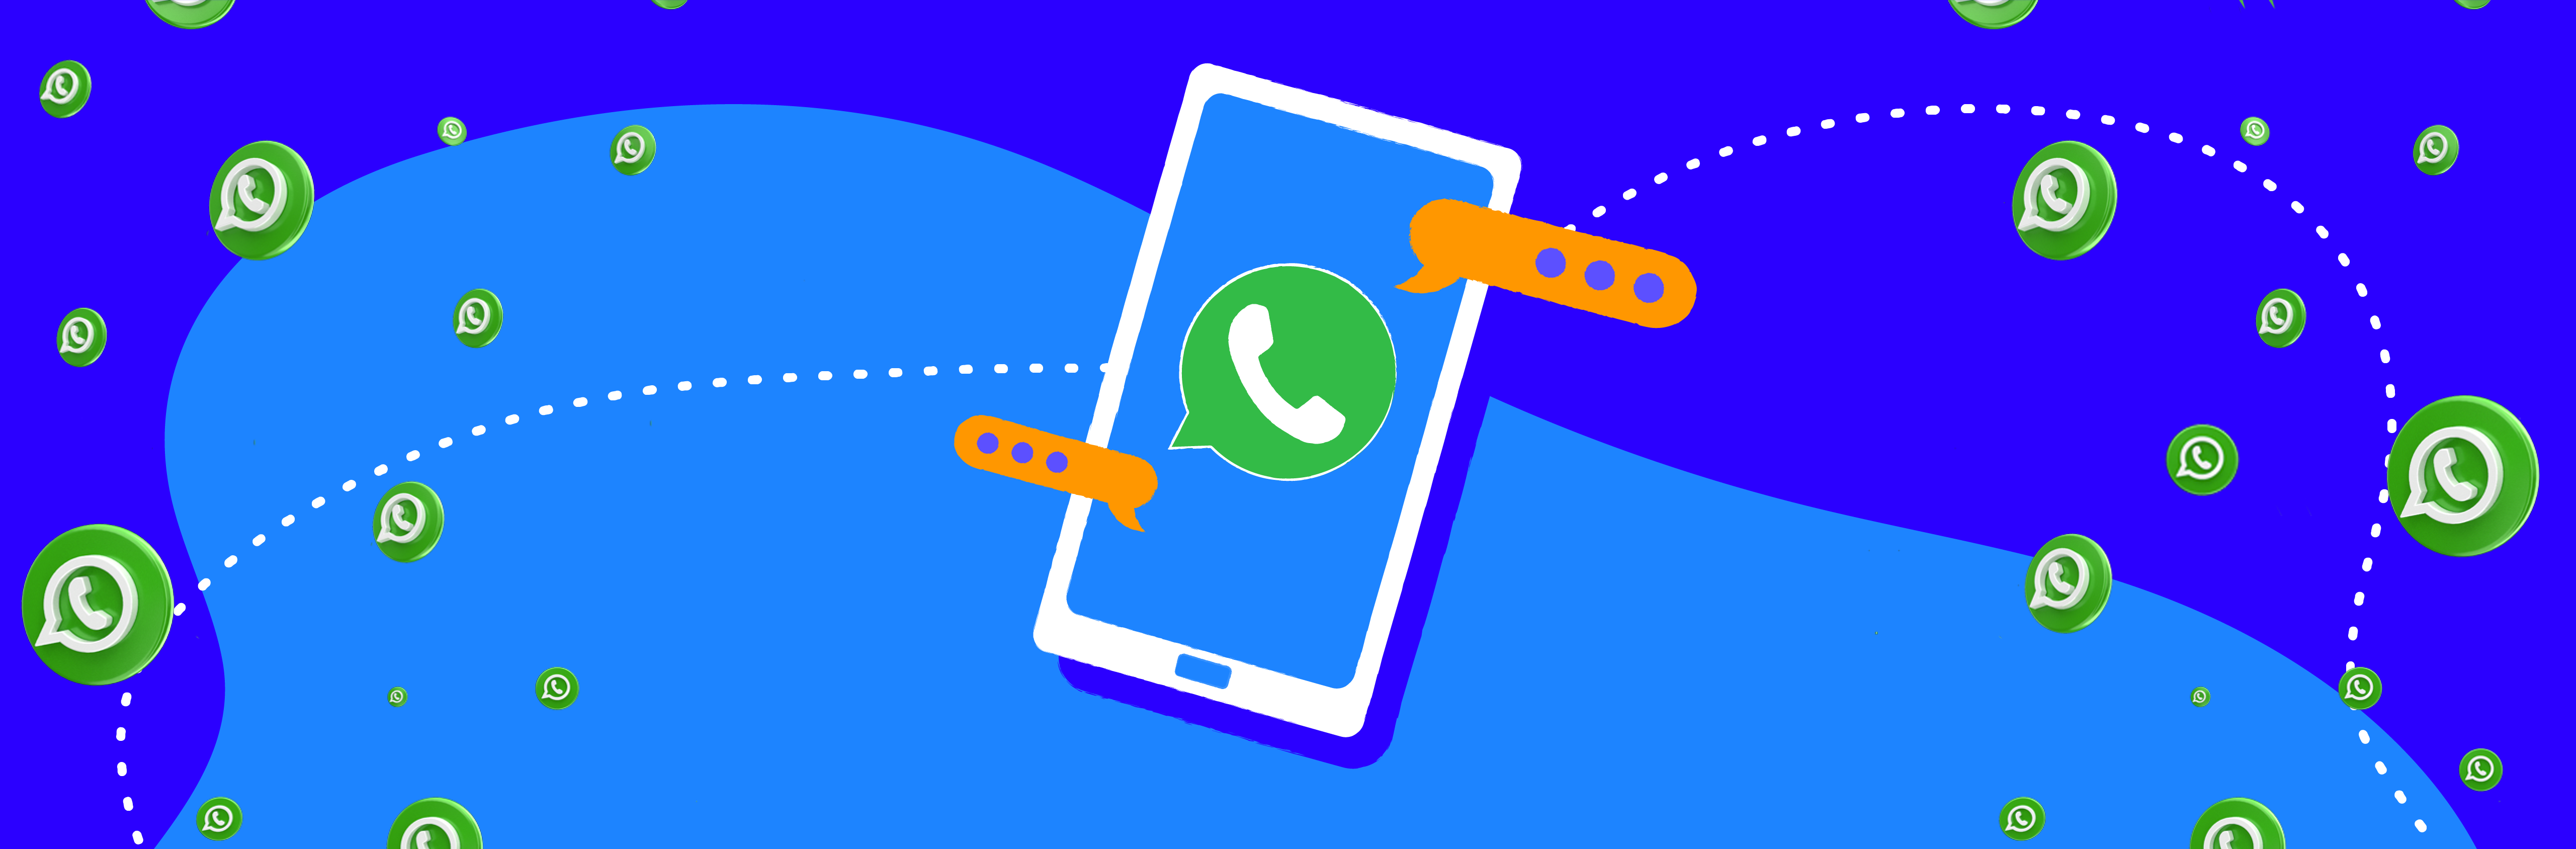 11 exemplos de mensagens no WhatsApp para usar com seus clientes